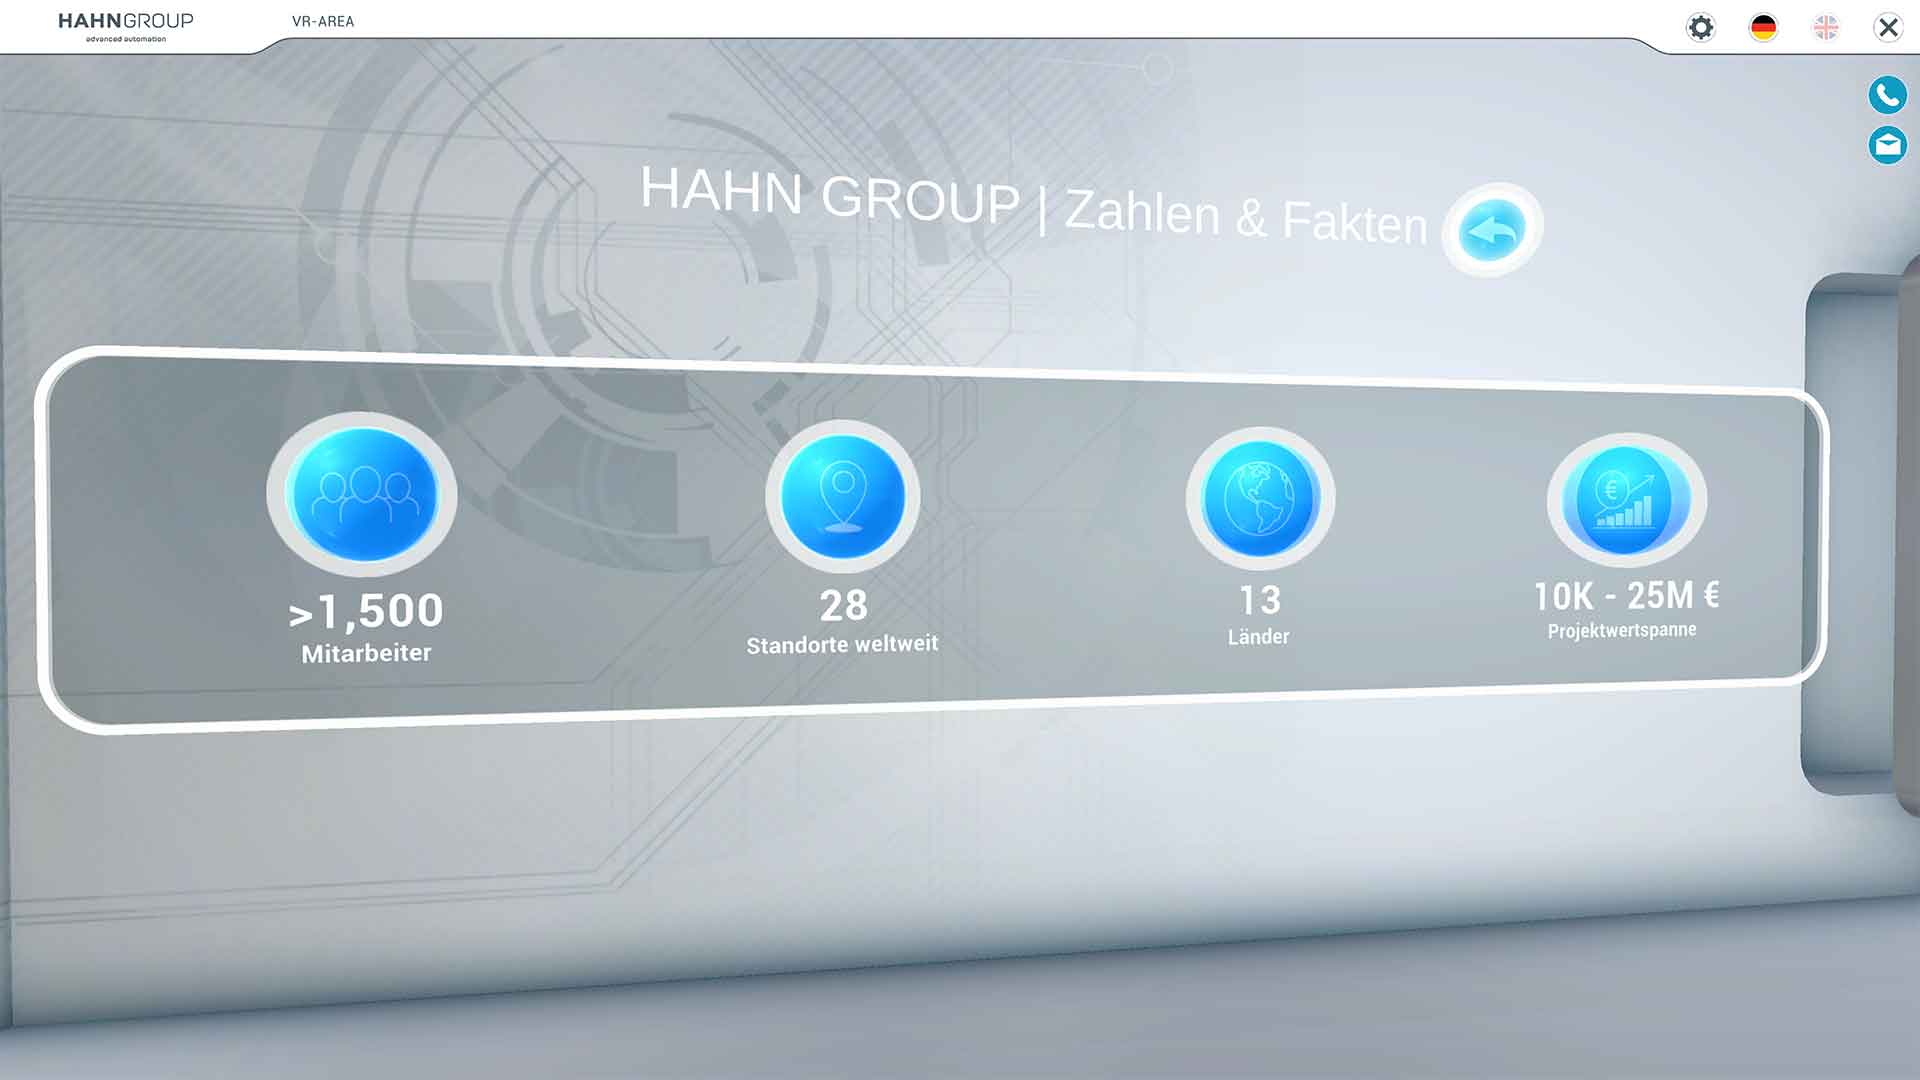 Videos ansehen, 3D Modelle von allen Seiten betrachten oder interaktive Inhalte nutzen ist im virtuellen Schauraum der HAHN Group möglich.